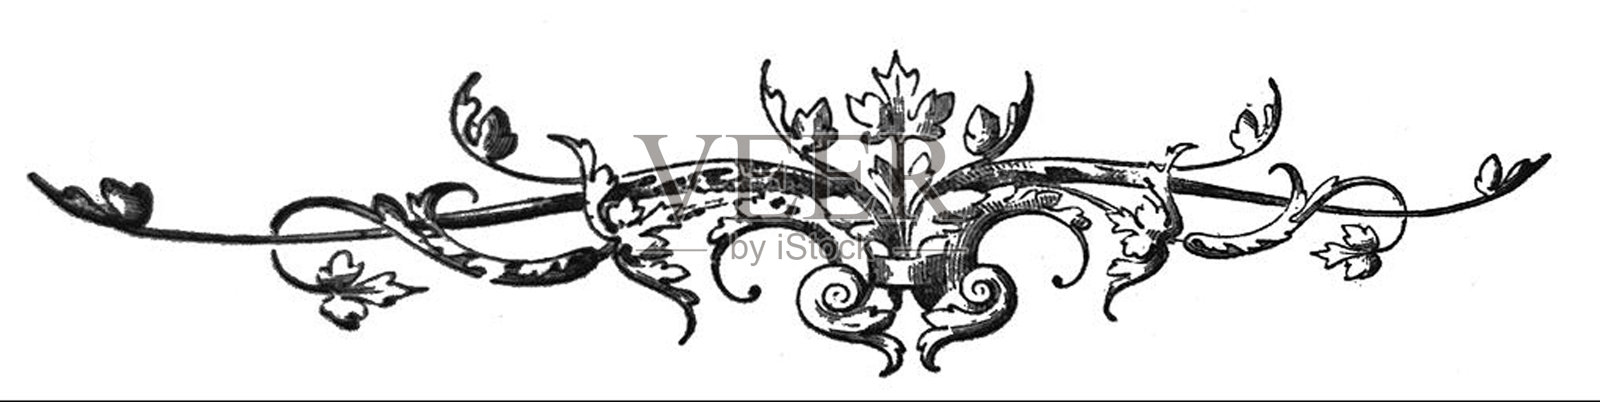 古董插图-托马斯摩尔的诗歌-装饰绘画-花式设计插画图片素材